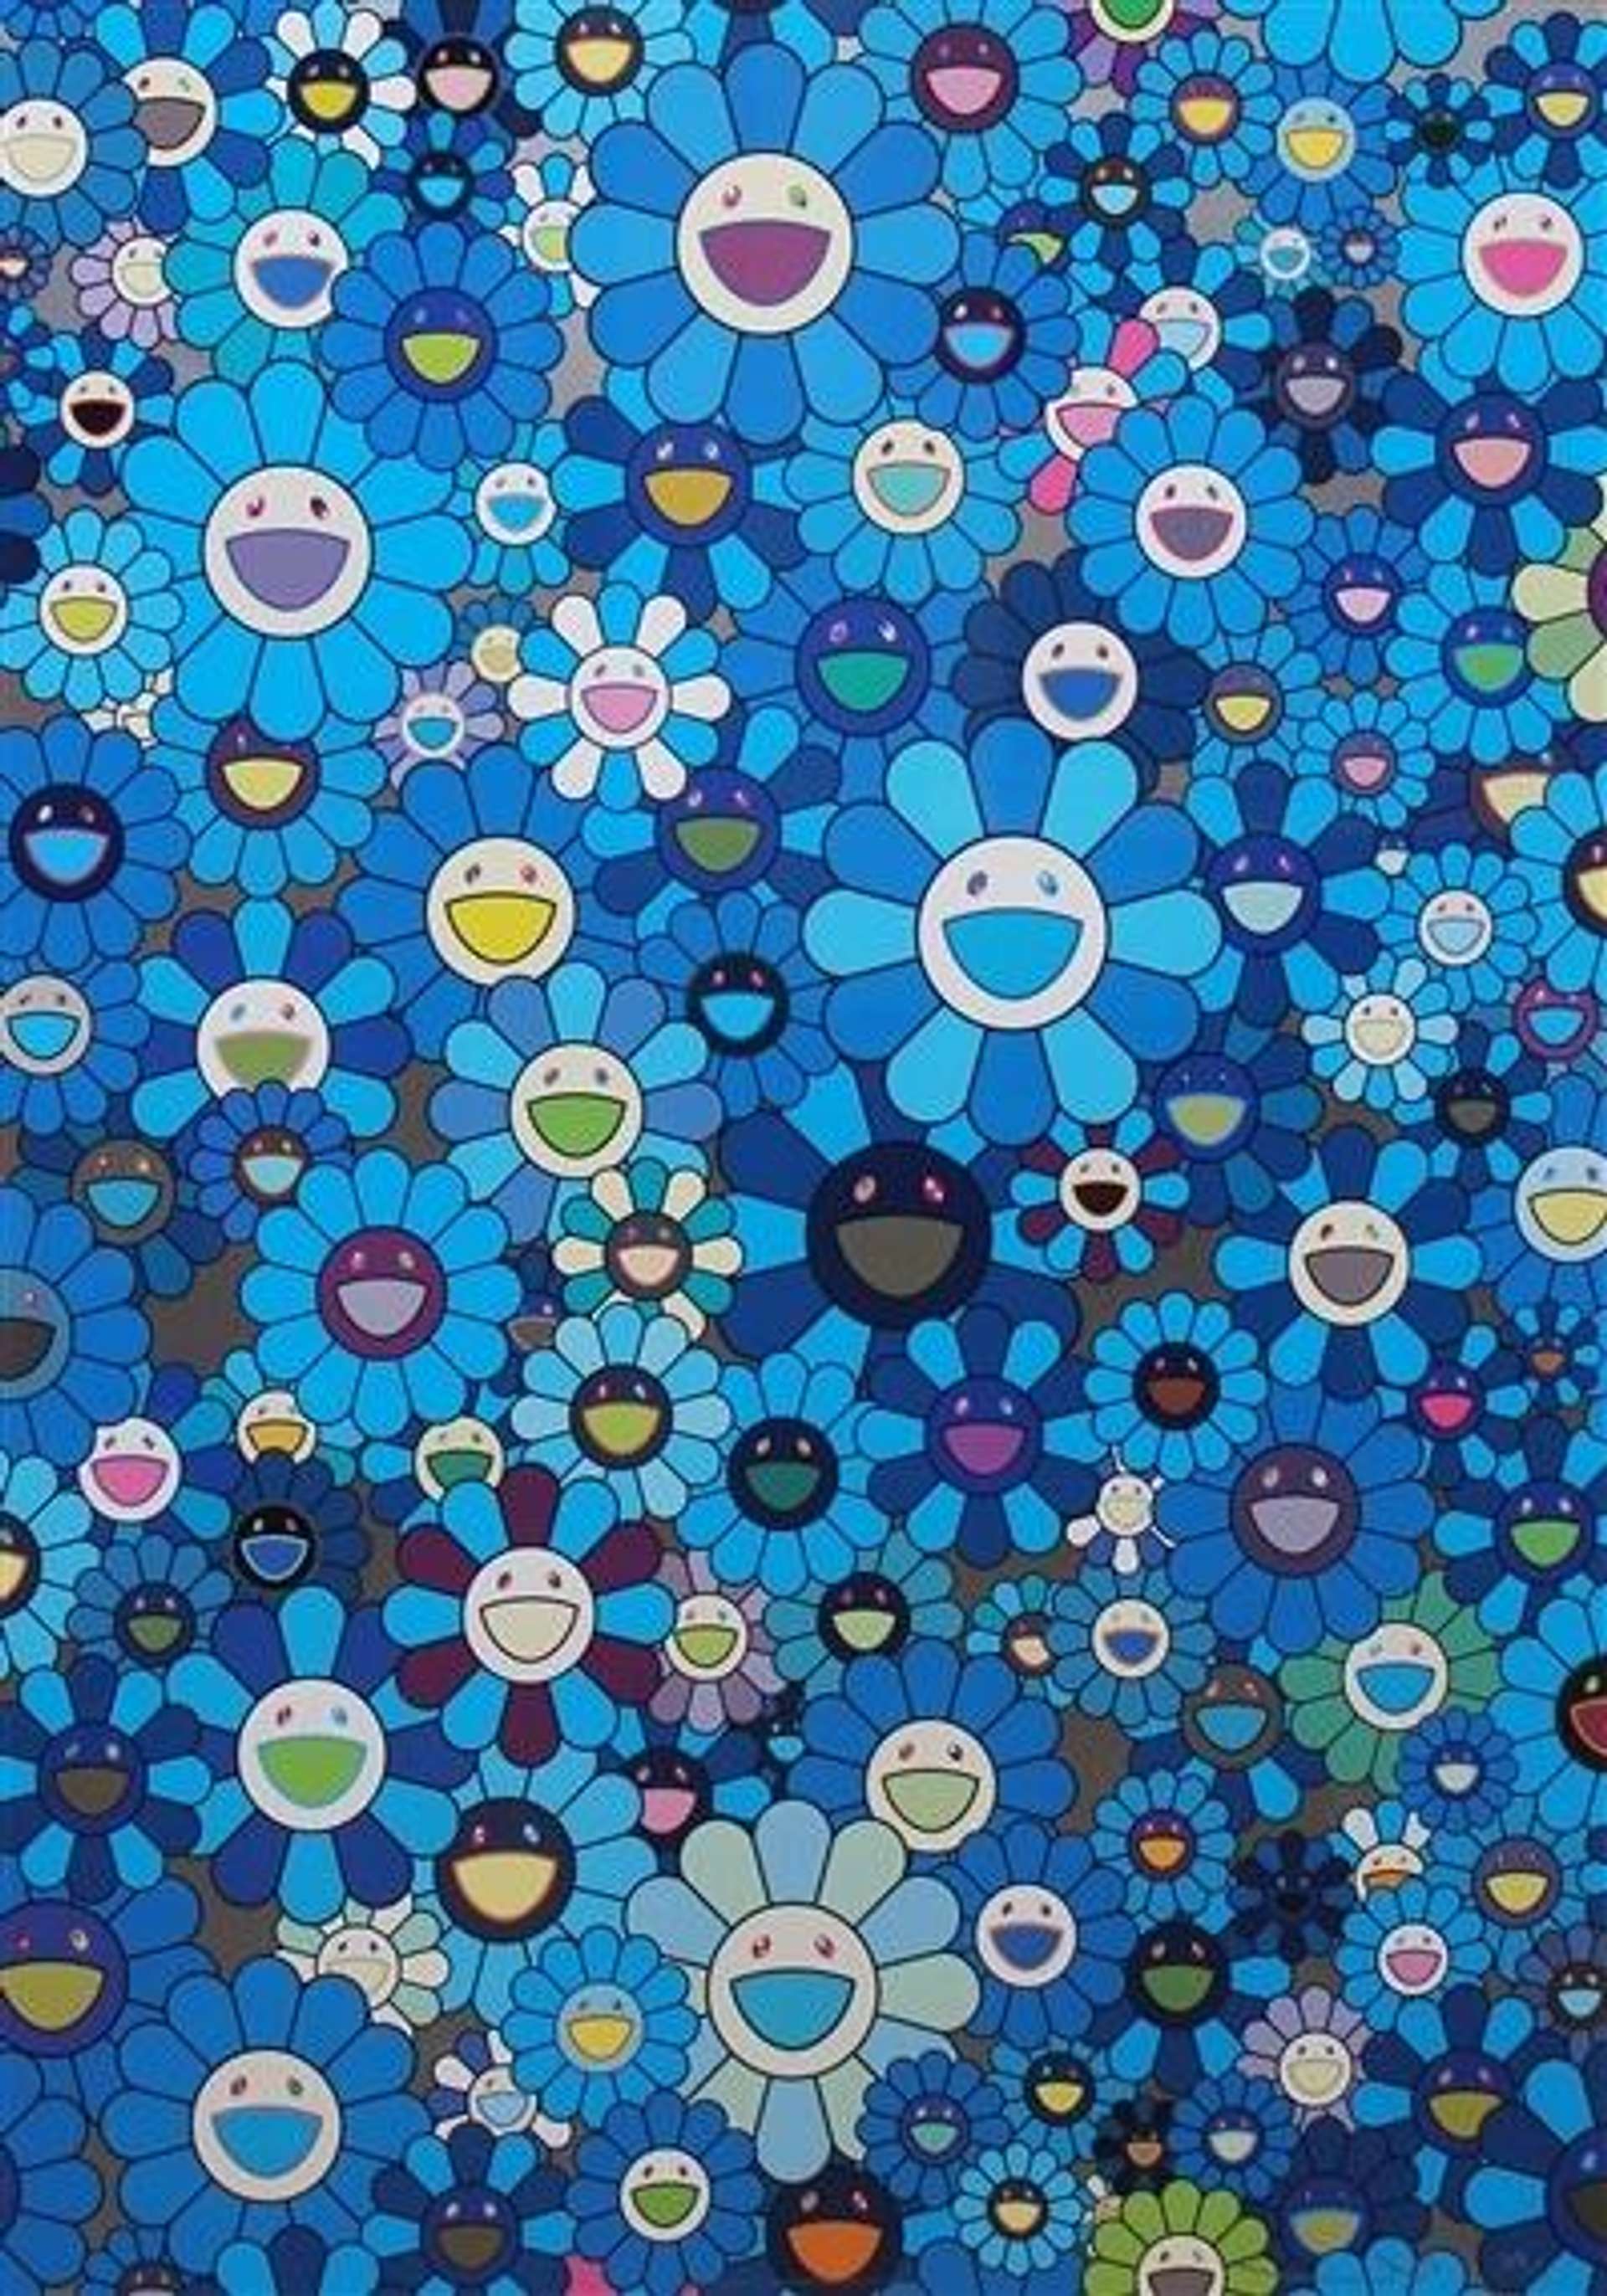 takashi murakami art wallpaper